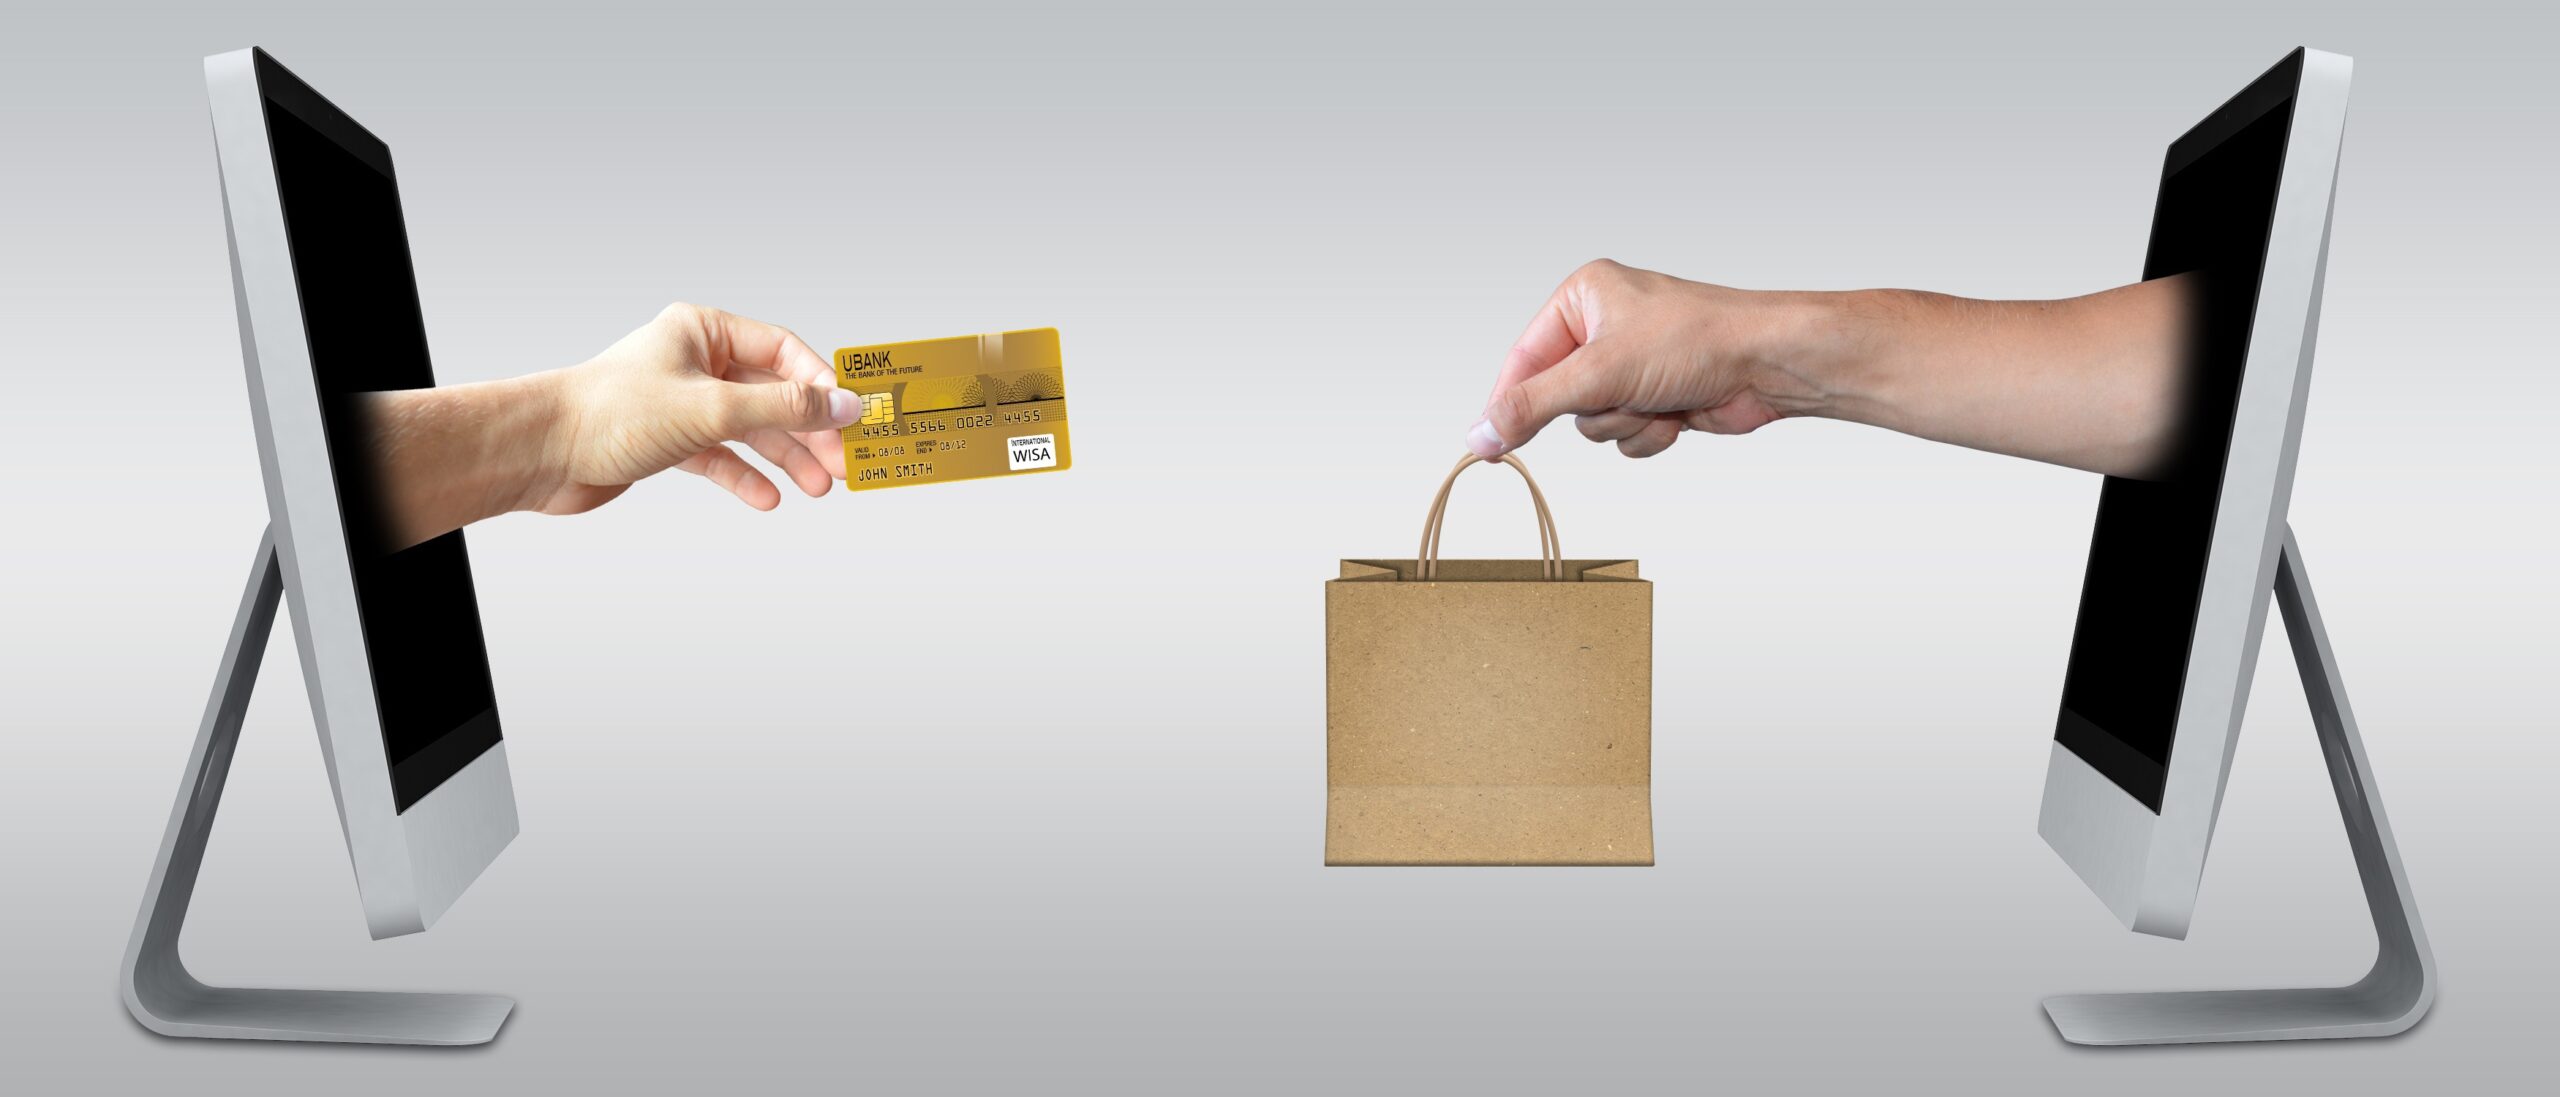 Cartão de crédito: vantagens e desvantagens.